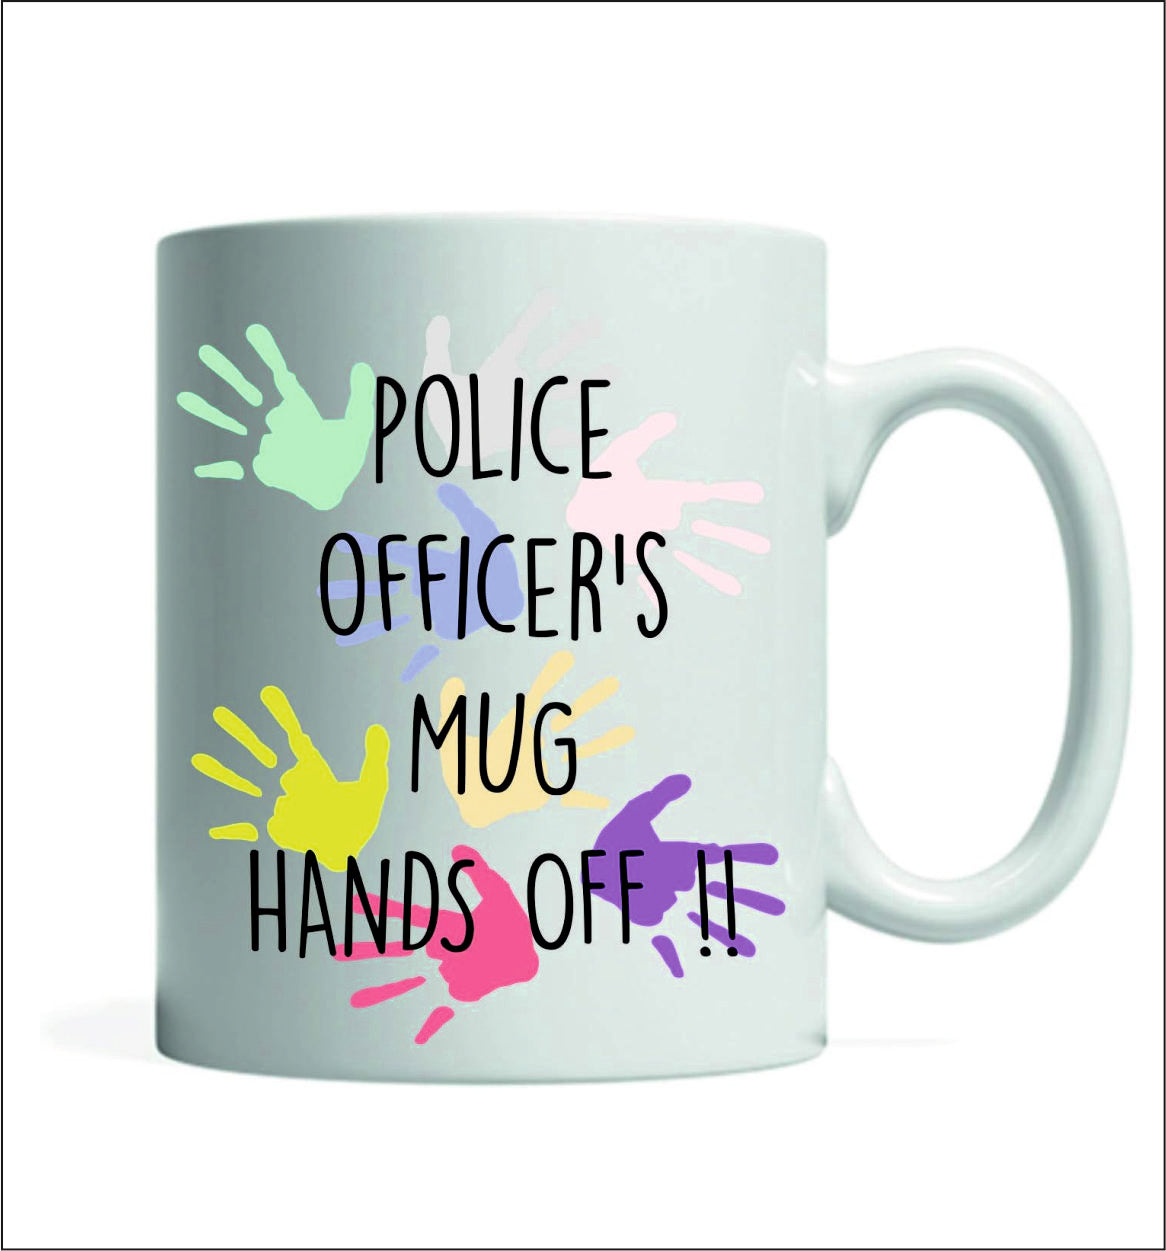 1 x Police Officer' Mug Hands Off